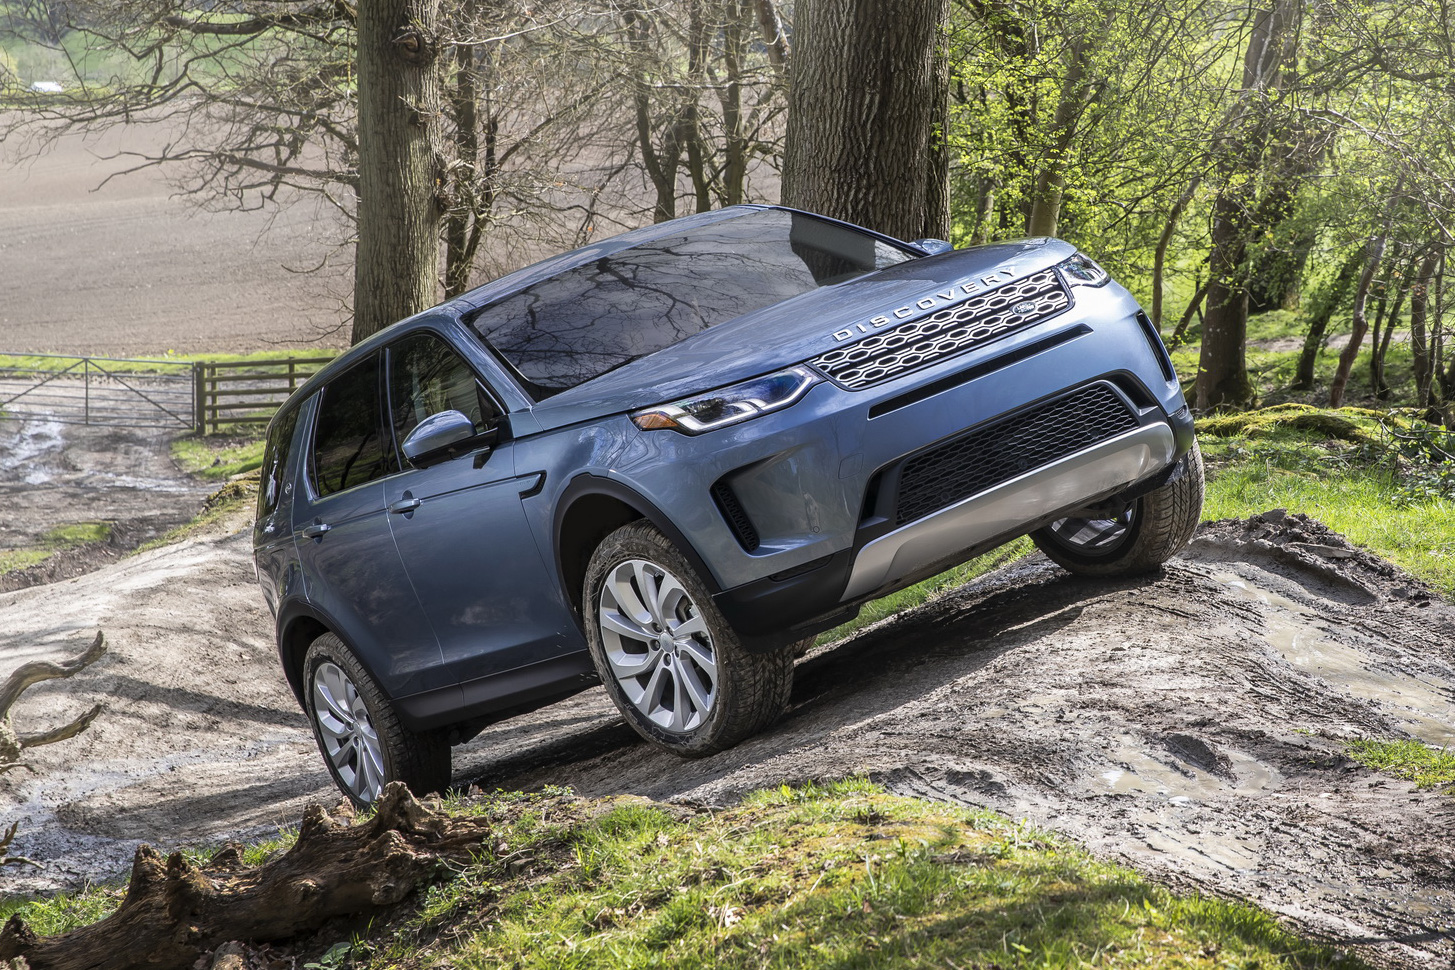 Range Rover Evoque và Discovery Sport thế hệ mới chuẩn bị thay đổi khung gầm tối ưu cho động cơ điện